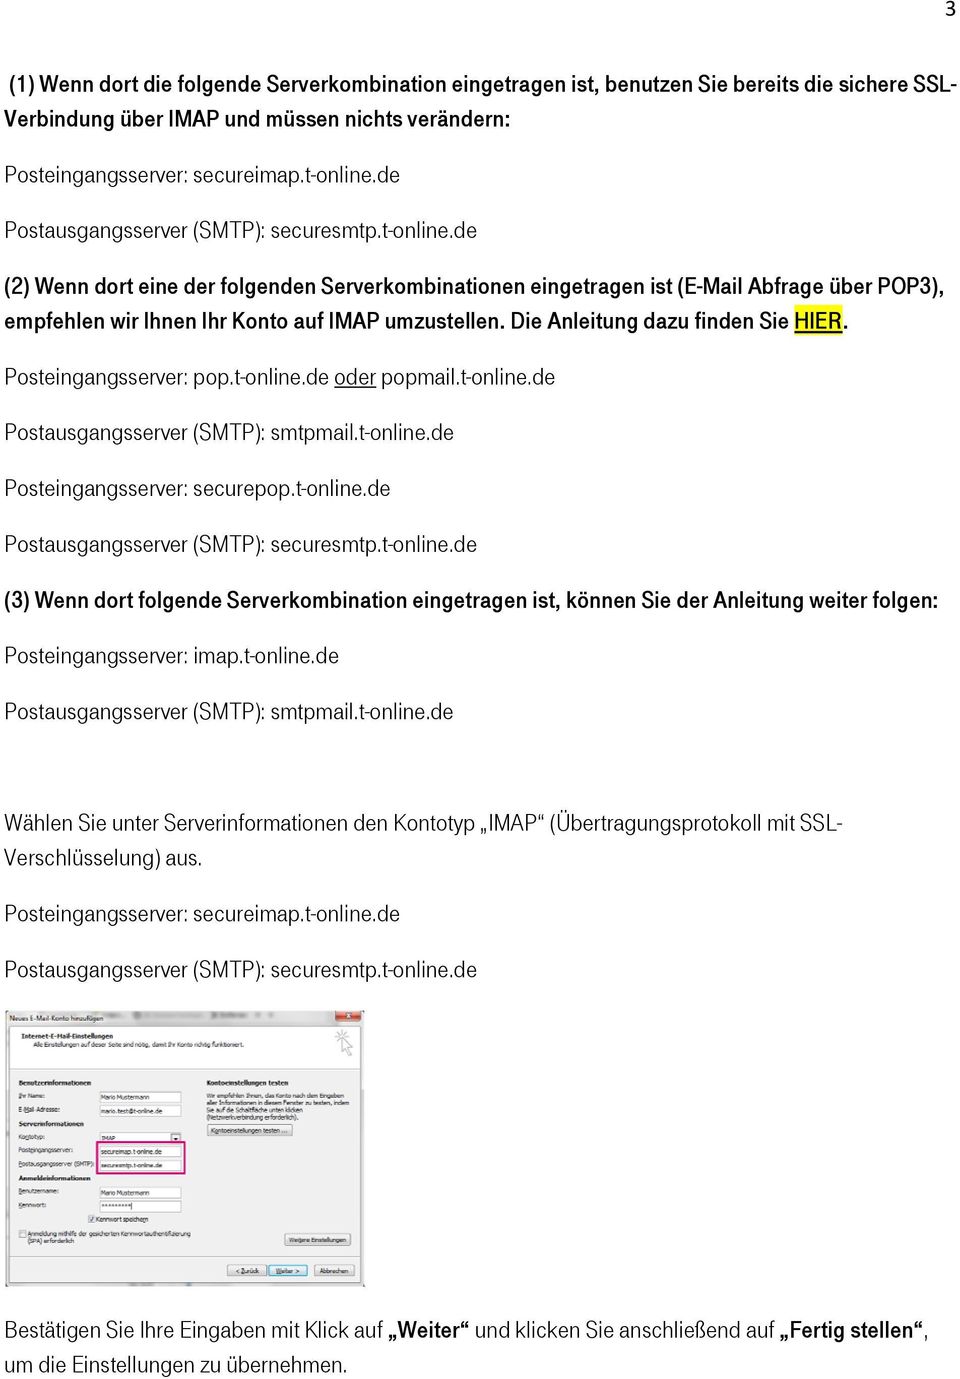 Posteingangsserver: pop.t-online.de oder popmail.t-online.de Posteingangsserver: securepop.t-online.de (3) Wenn dort folgende Serverkombination eingetragen ist, können Sie der Anleitung weiter folgen: Posteingangsserver: imap.